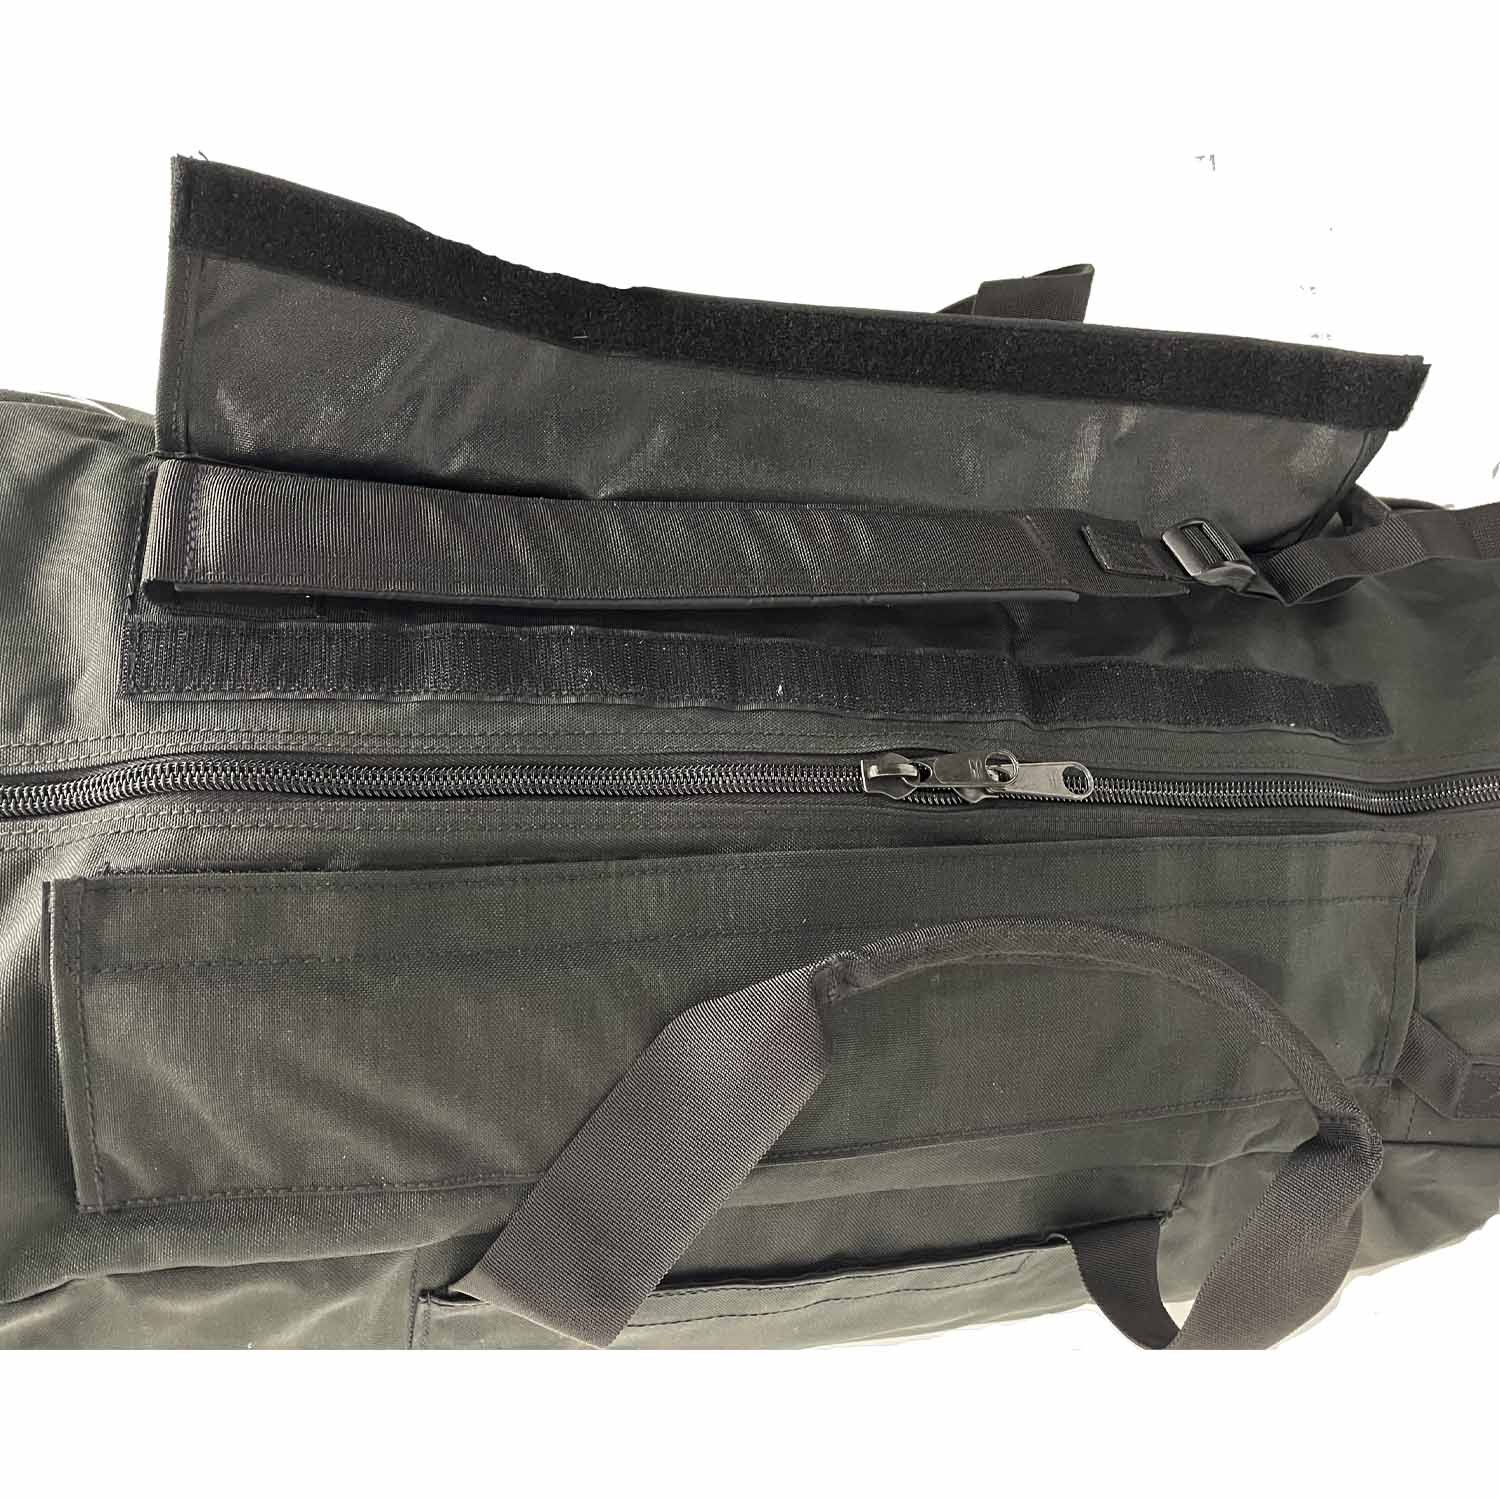 Standard Travel Bag - Black